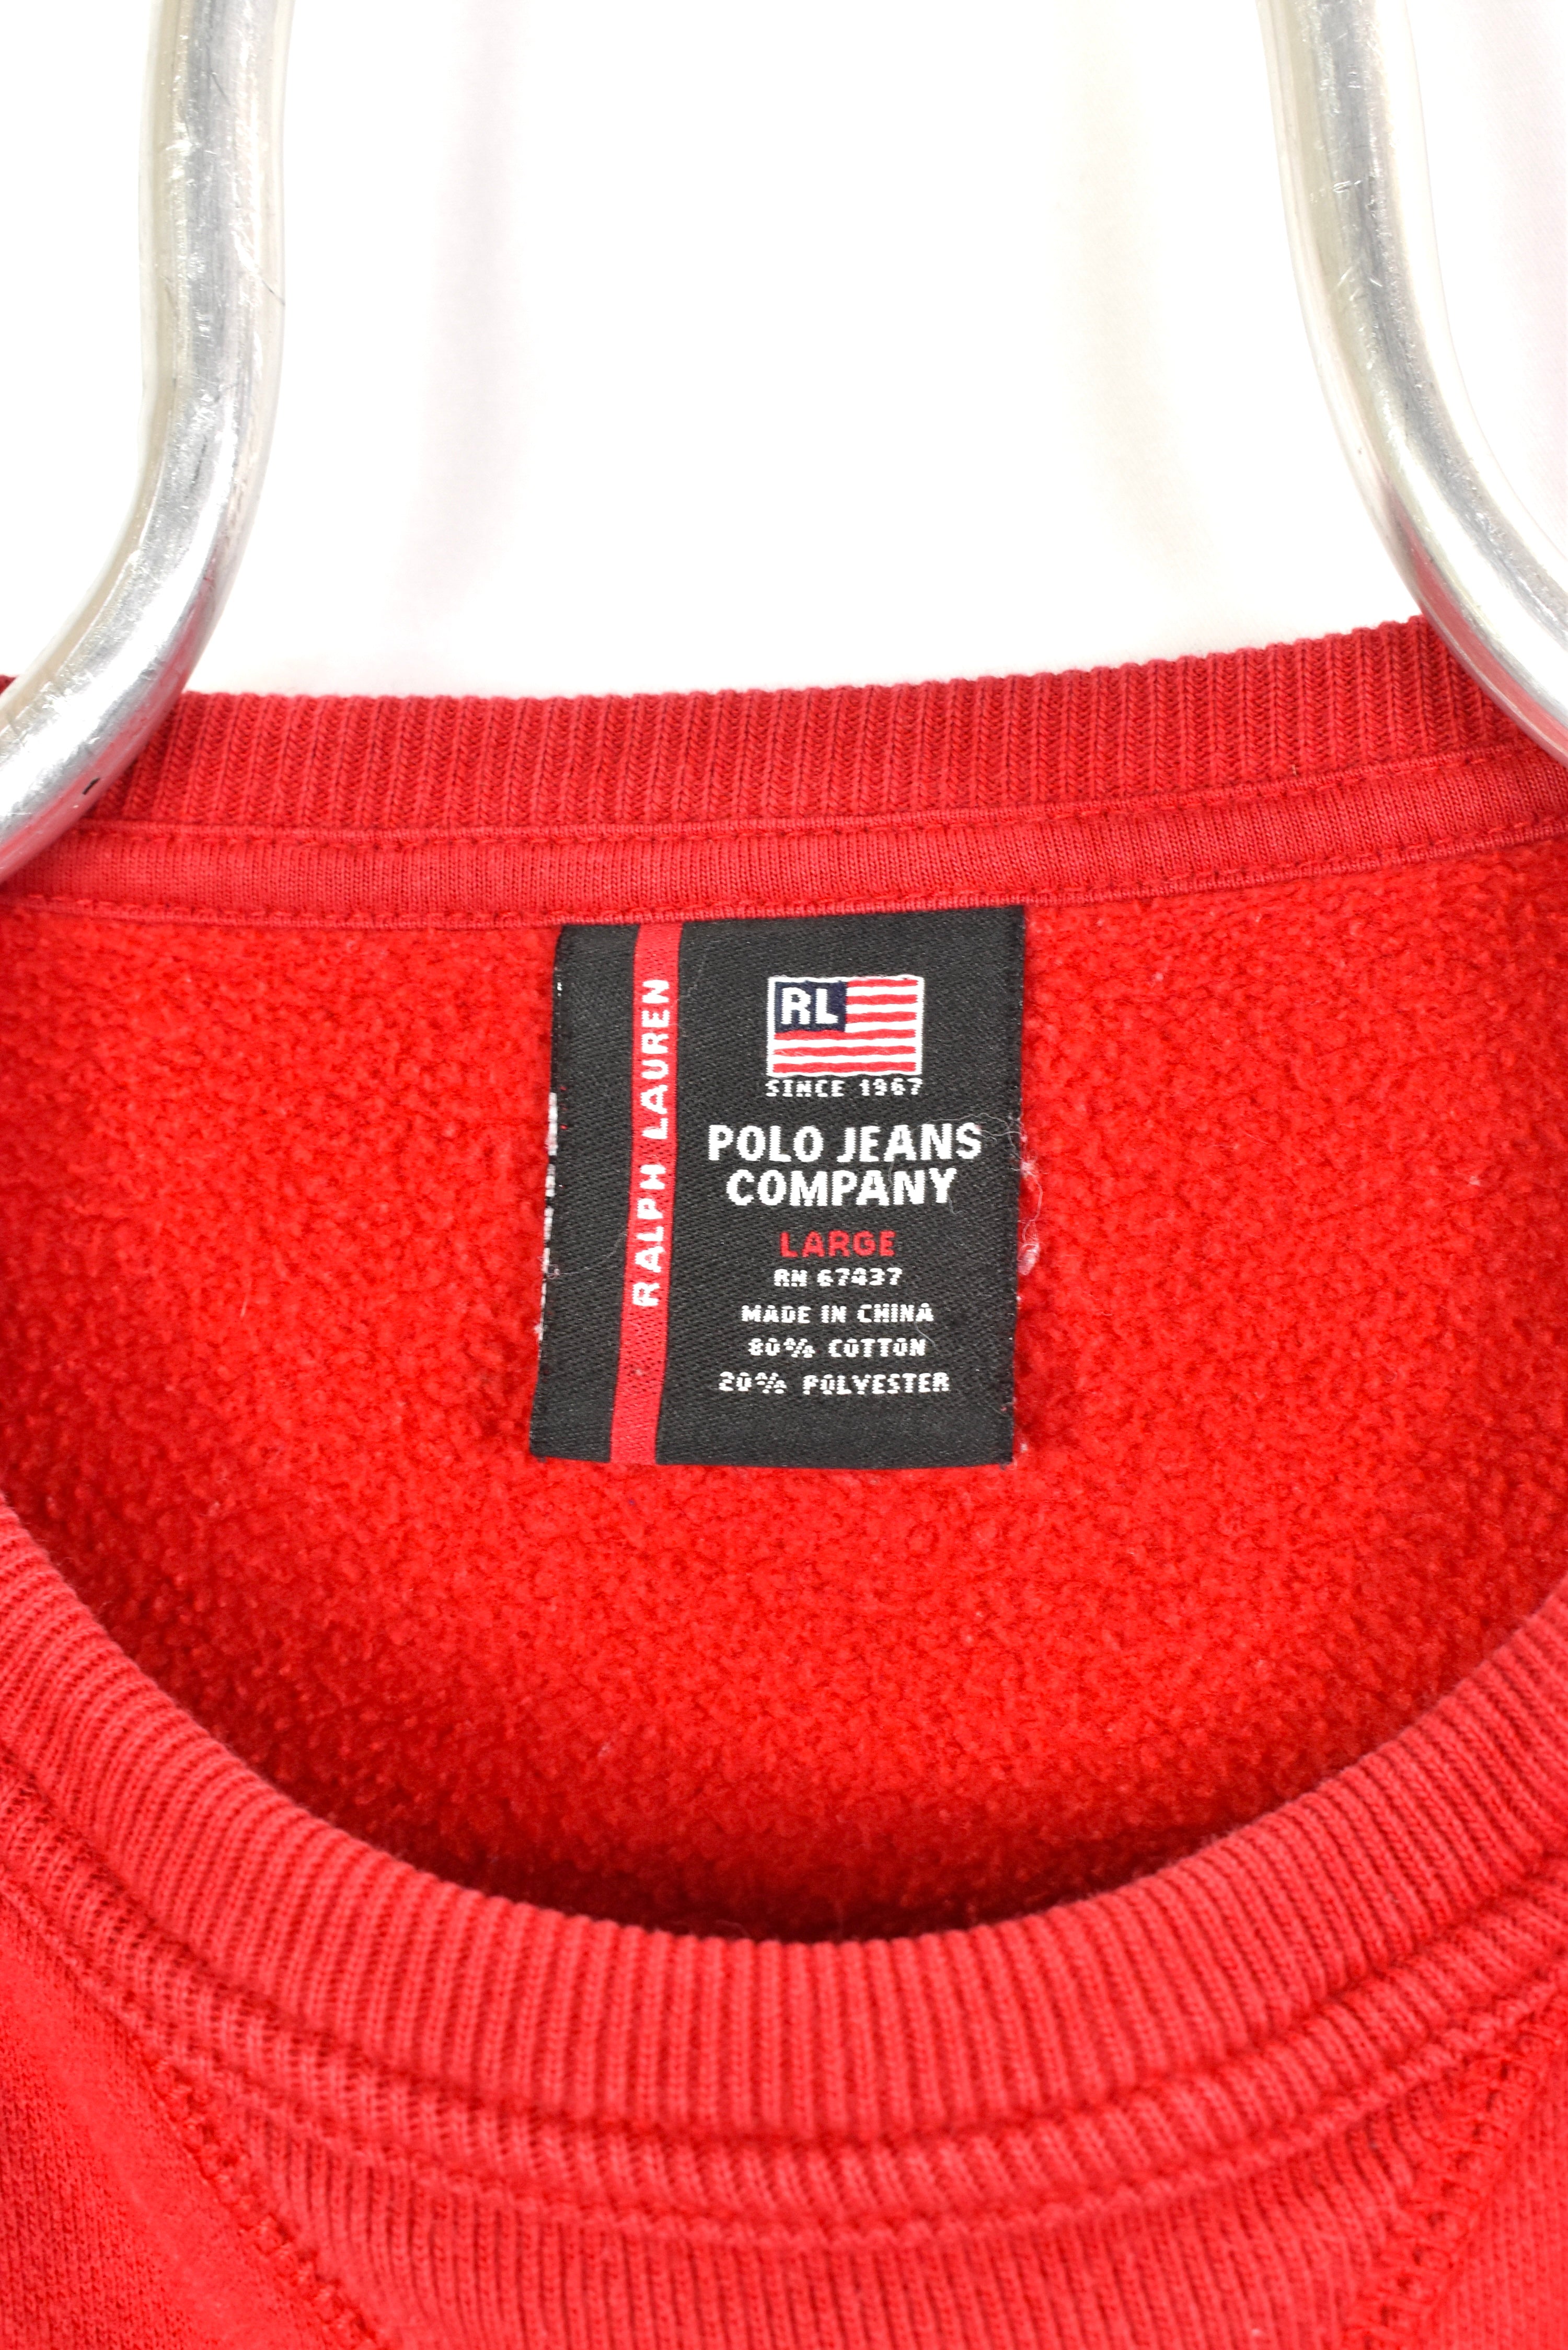 Vintage Ralph Lauren sweatshirt, Polo embroidered crewneck - large, red RALPH LAUREN